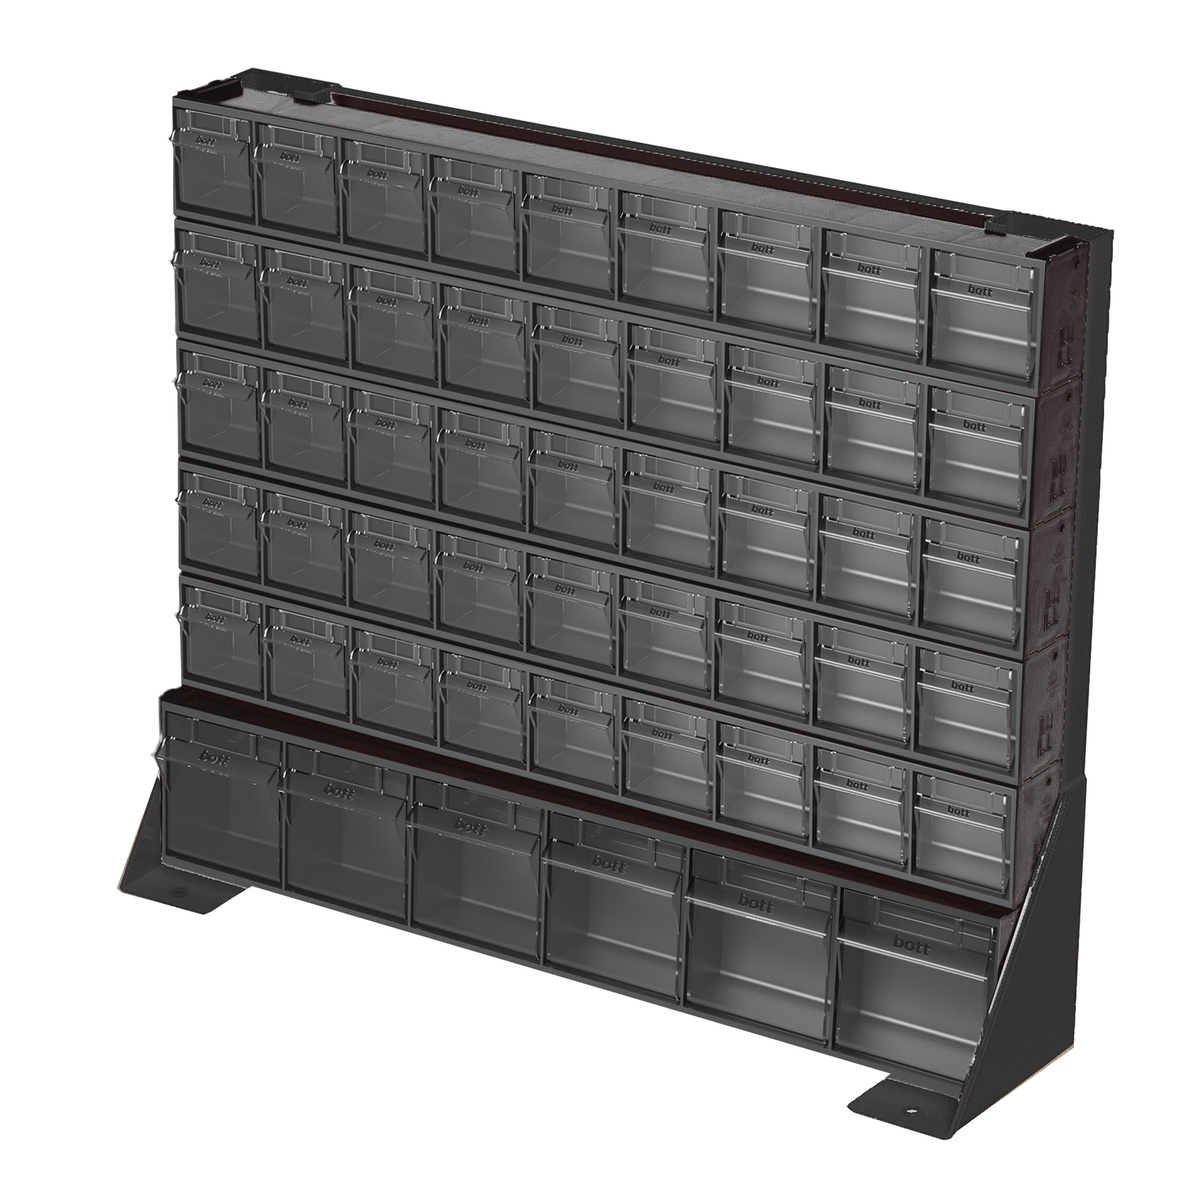 02513027. - Tilt box bench stand kit